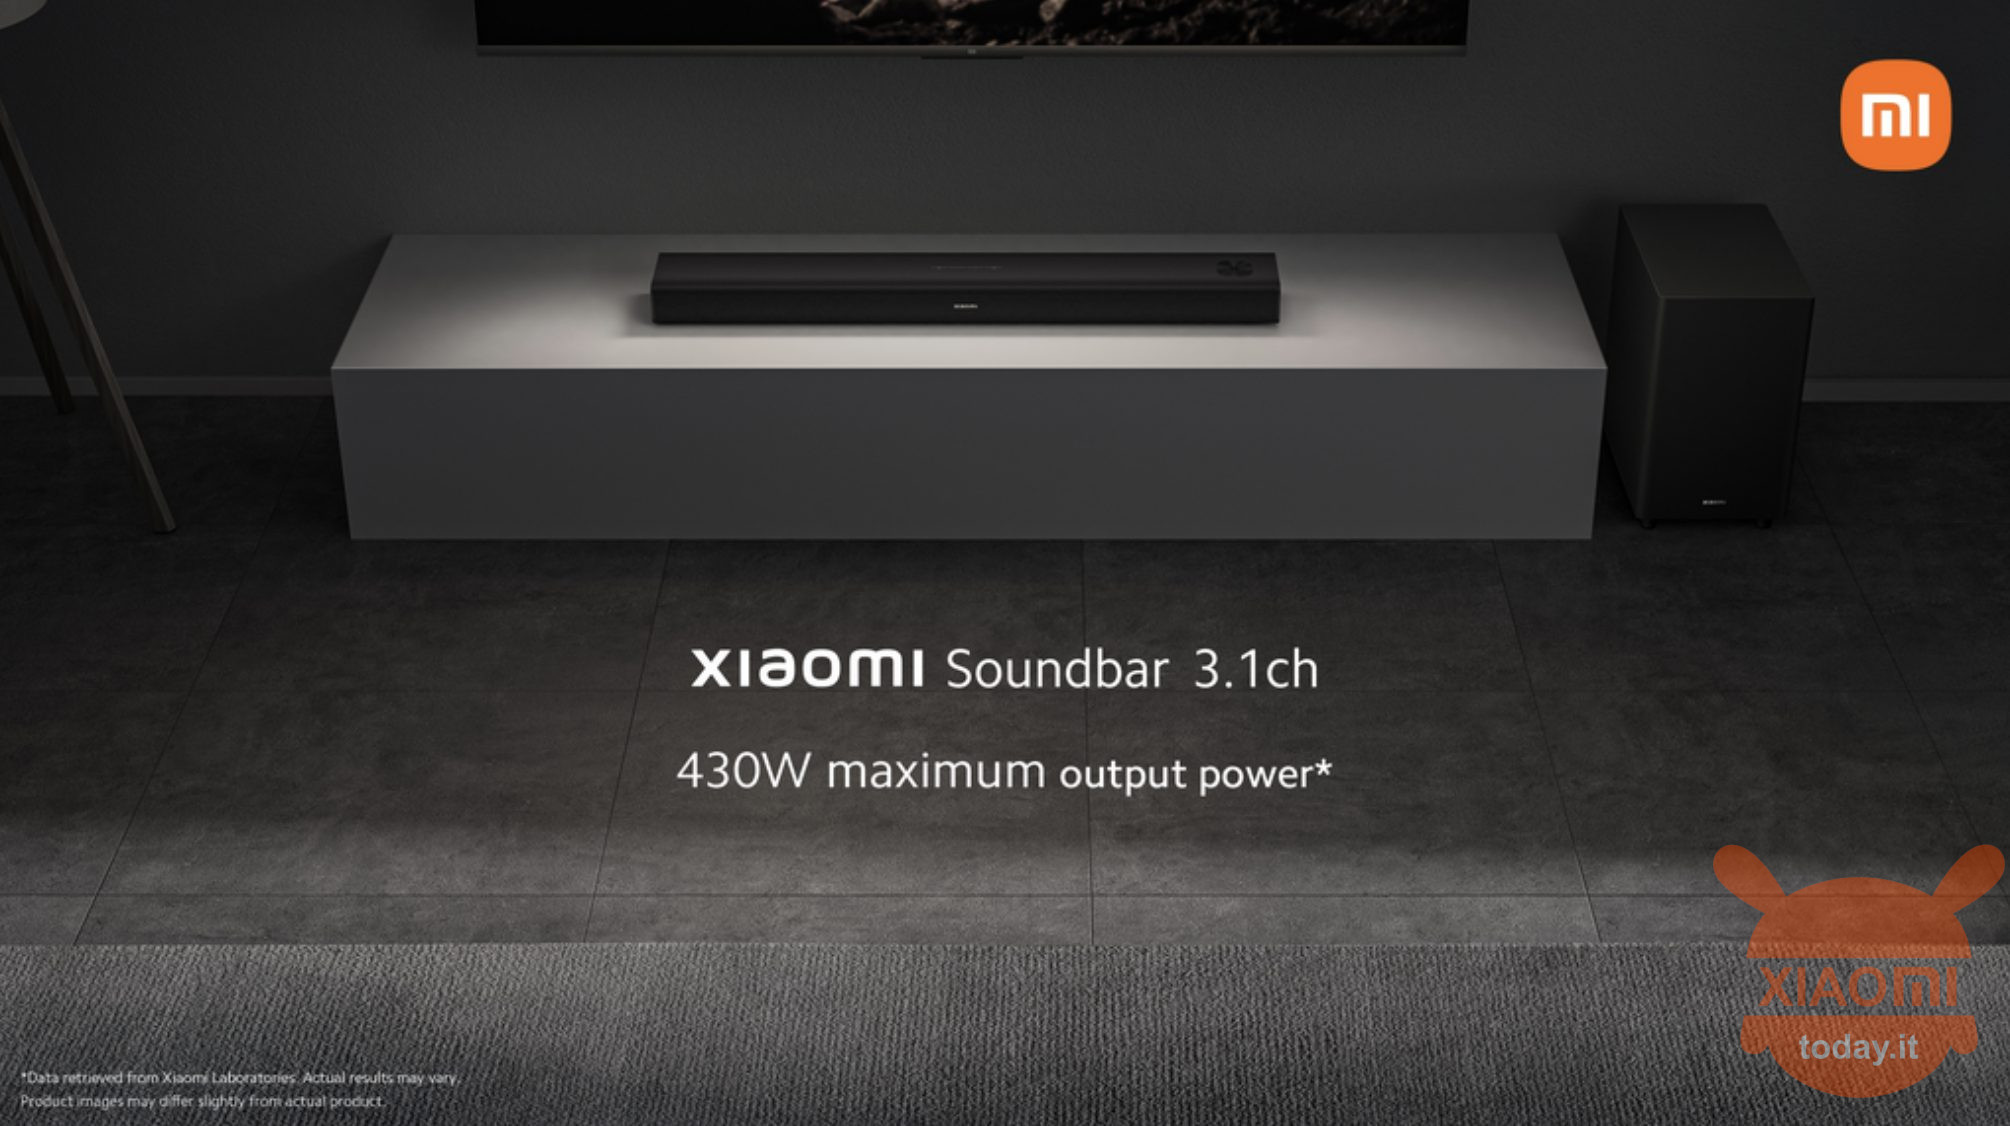 xiaomi soundbar 3.1ch official: especificaciones y lanzamiento de la primera barra de sonido de xiaomi en el mercado global